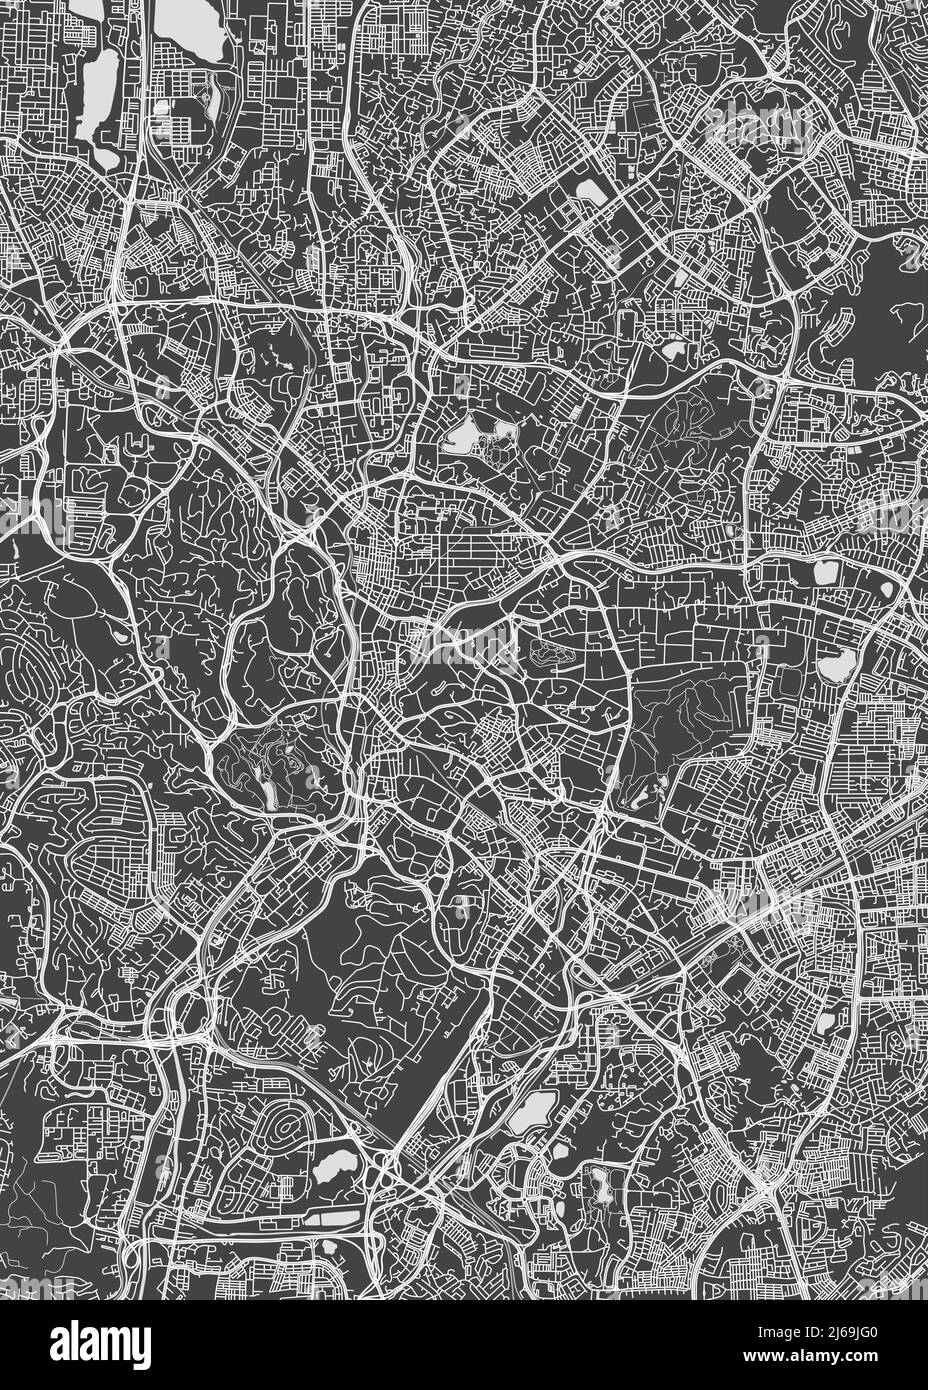 Plan de la ville de Kuala Lumpur, plan détaillé monochrome, illustration vectorielle Illustration de Vecteur